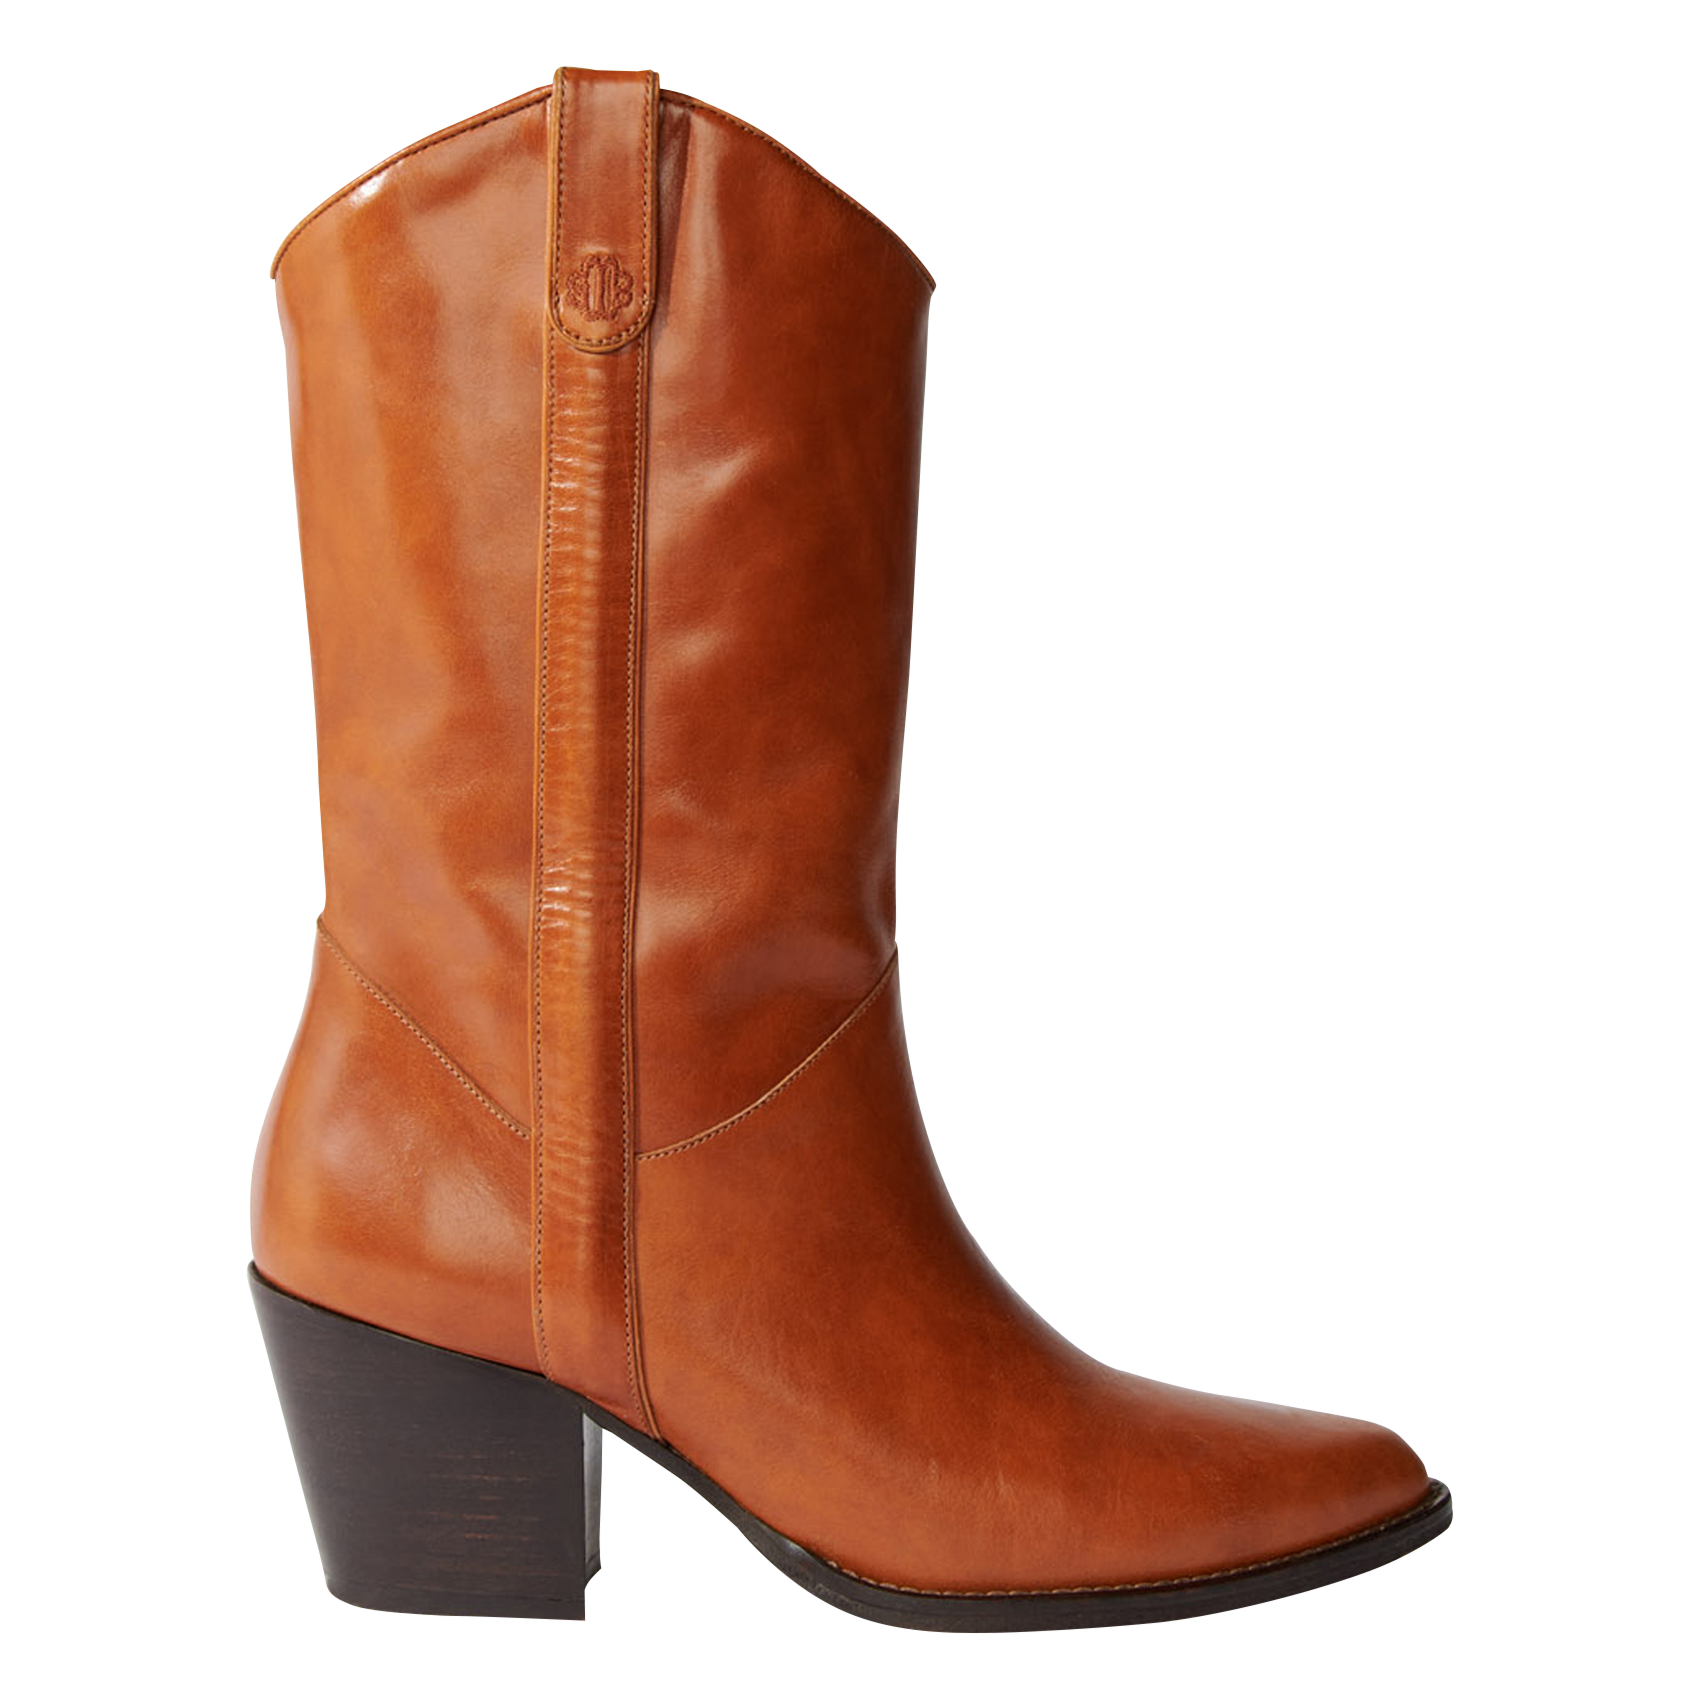 High heel boots woman heel 5 cm dark brown leather | Barca Stores